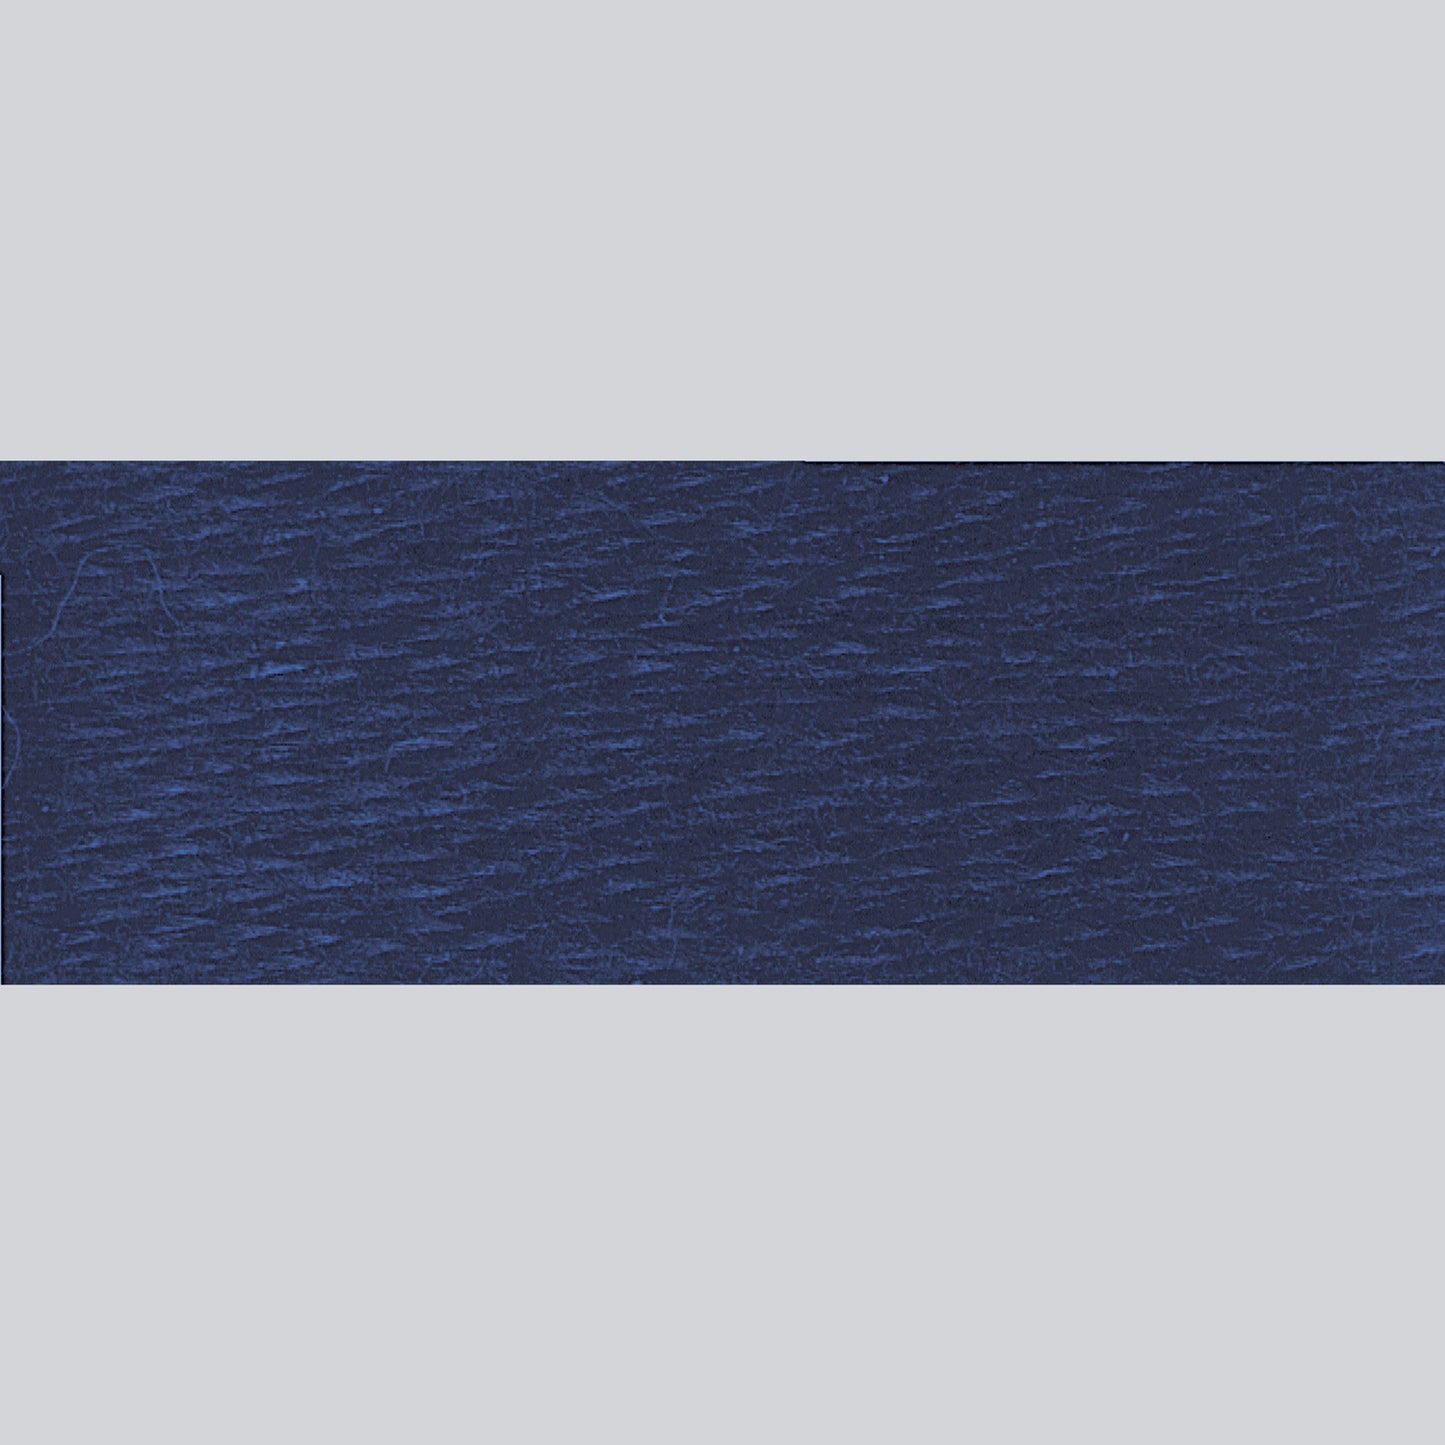 DMC Embroidery Floss - 939 Very Dark Navy Blue Alternative View #1